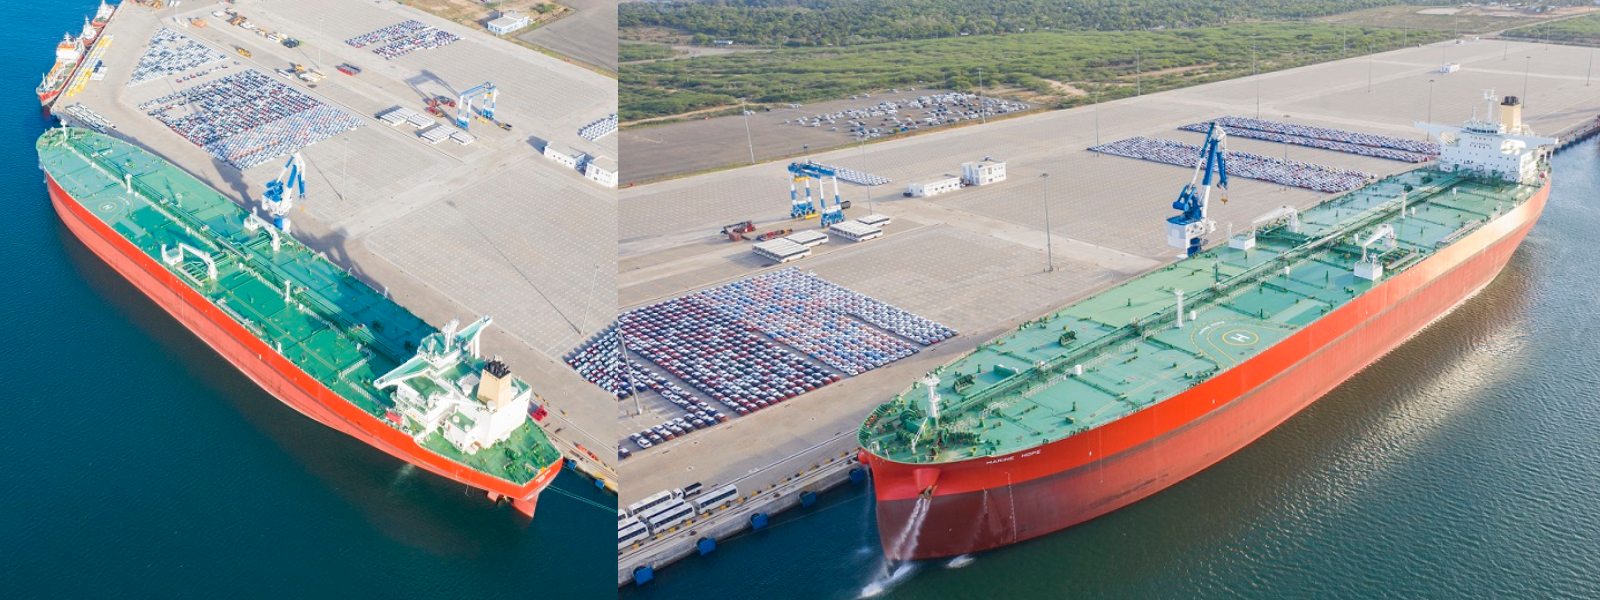 ‘Marine Hope’ largest vessel to call at Hambantota